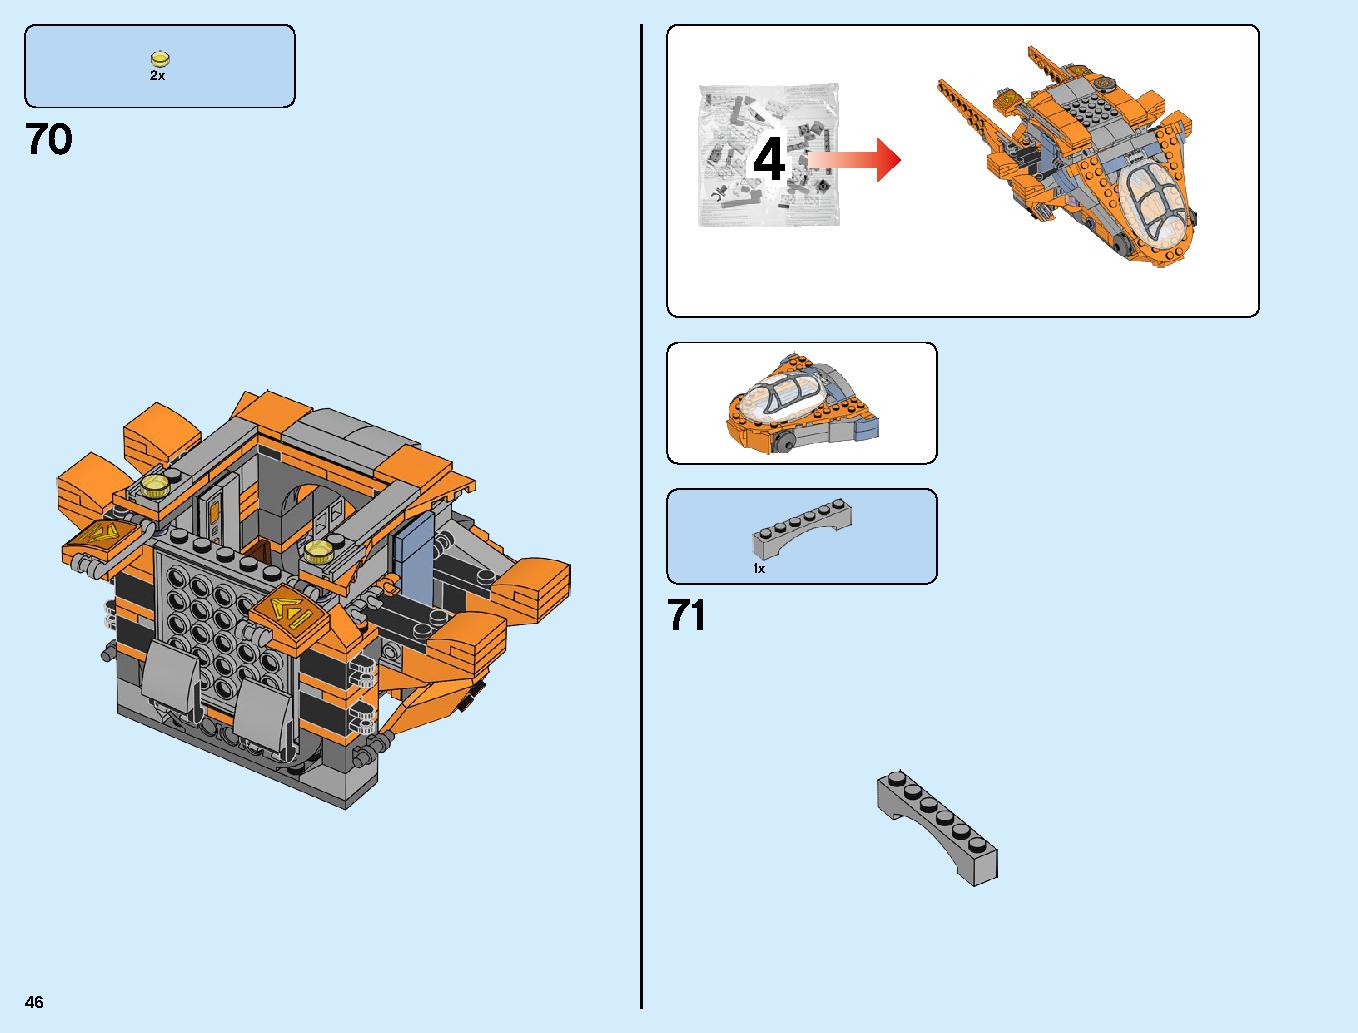 サノス アルティメット・バトル 76107 レゴの商品情報 レゴの説明書・組立方法 46 page